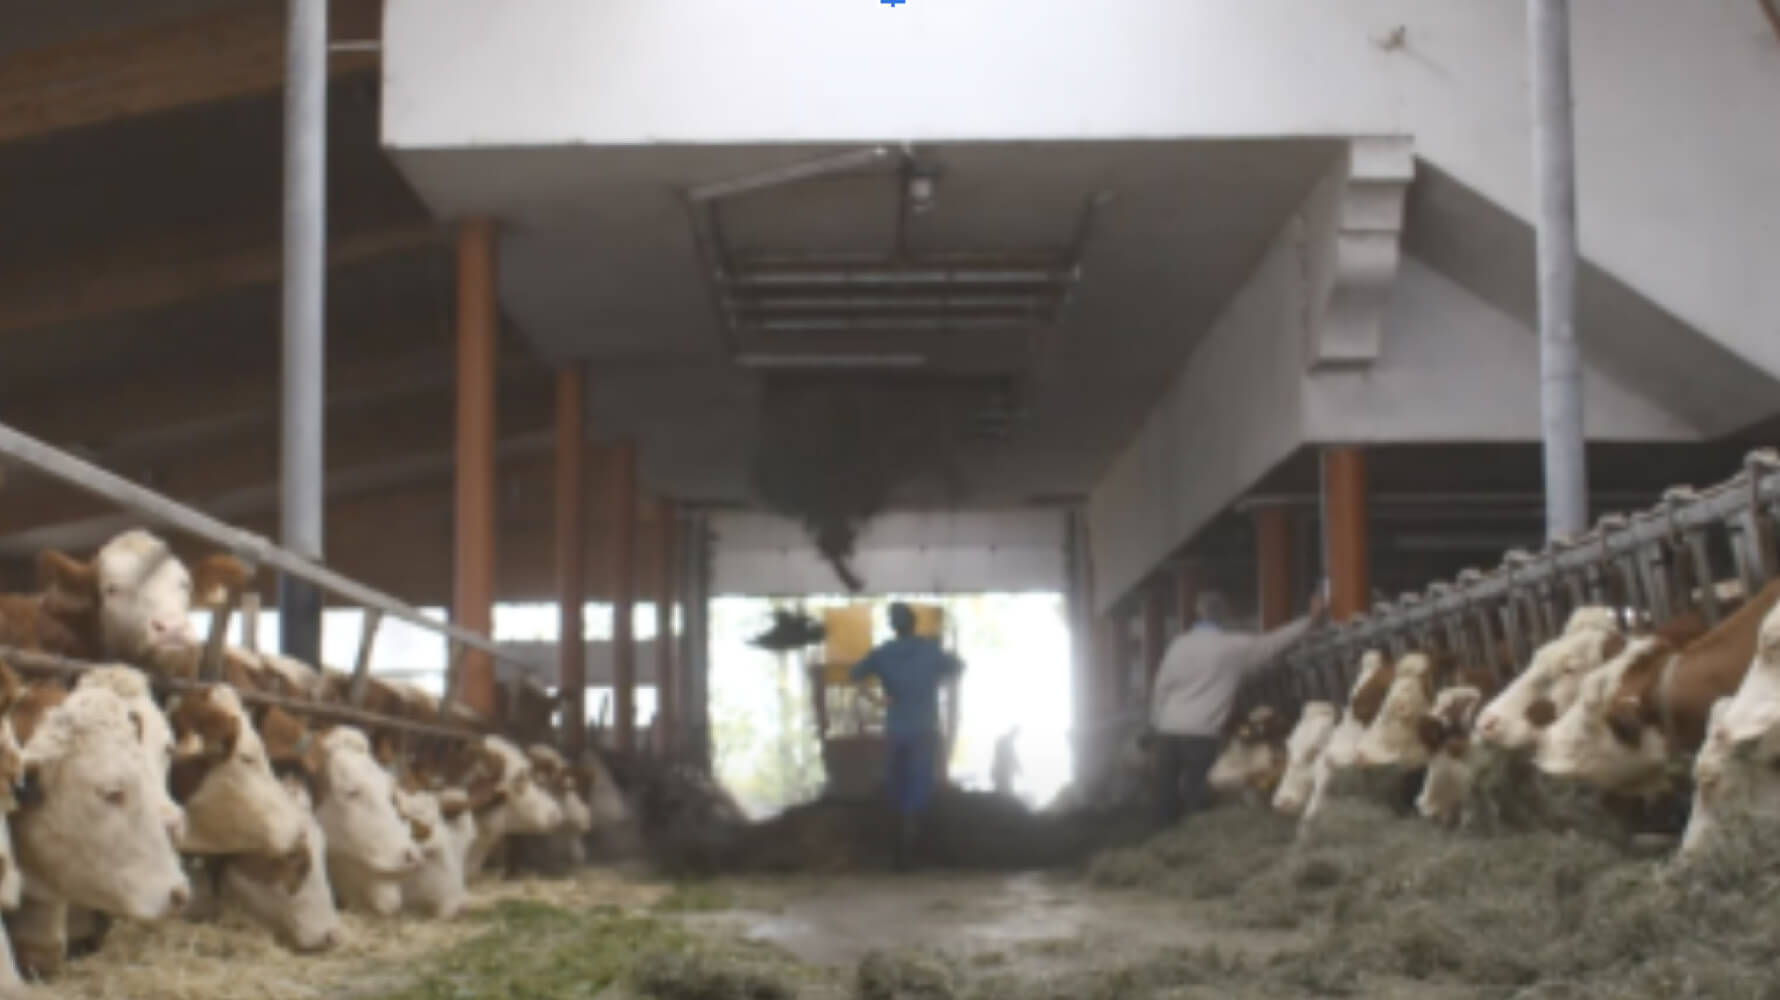 Josef-Misslinger-Landwirt-mit-Milchviehbetrieb-reinigt-Stall-PecuVital